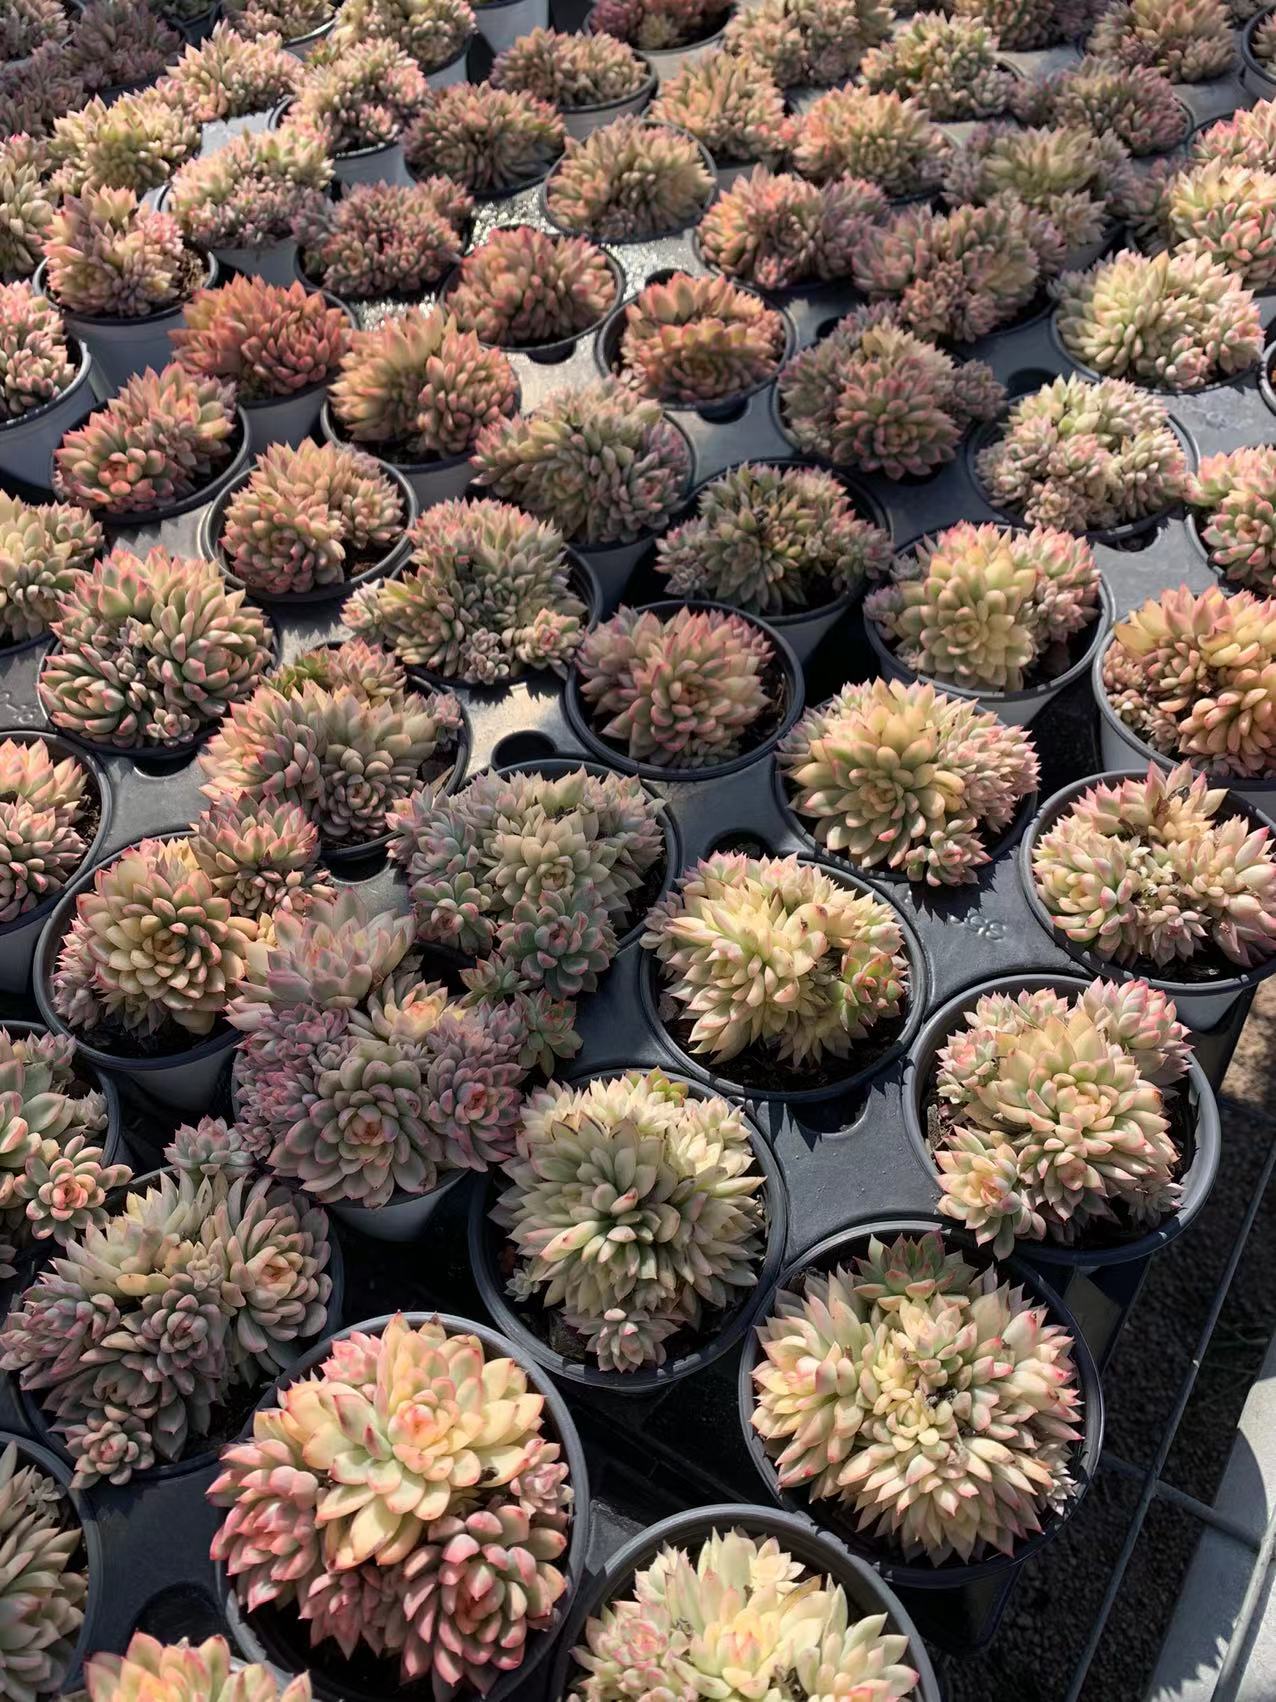 Mebina (Pot size 9cm)/Echeveria/Variegated Natural Live Plants Succulents